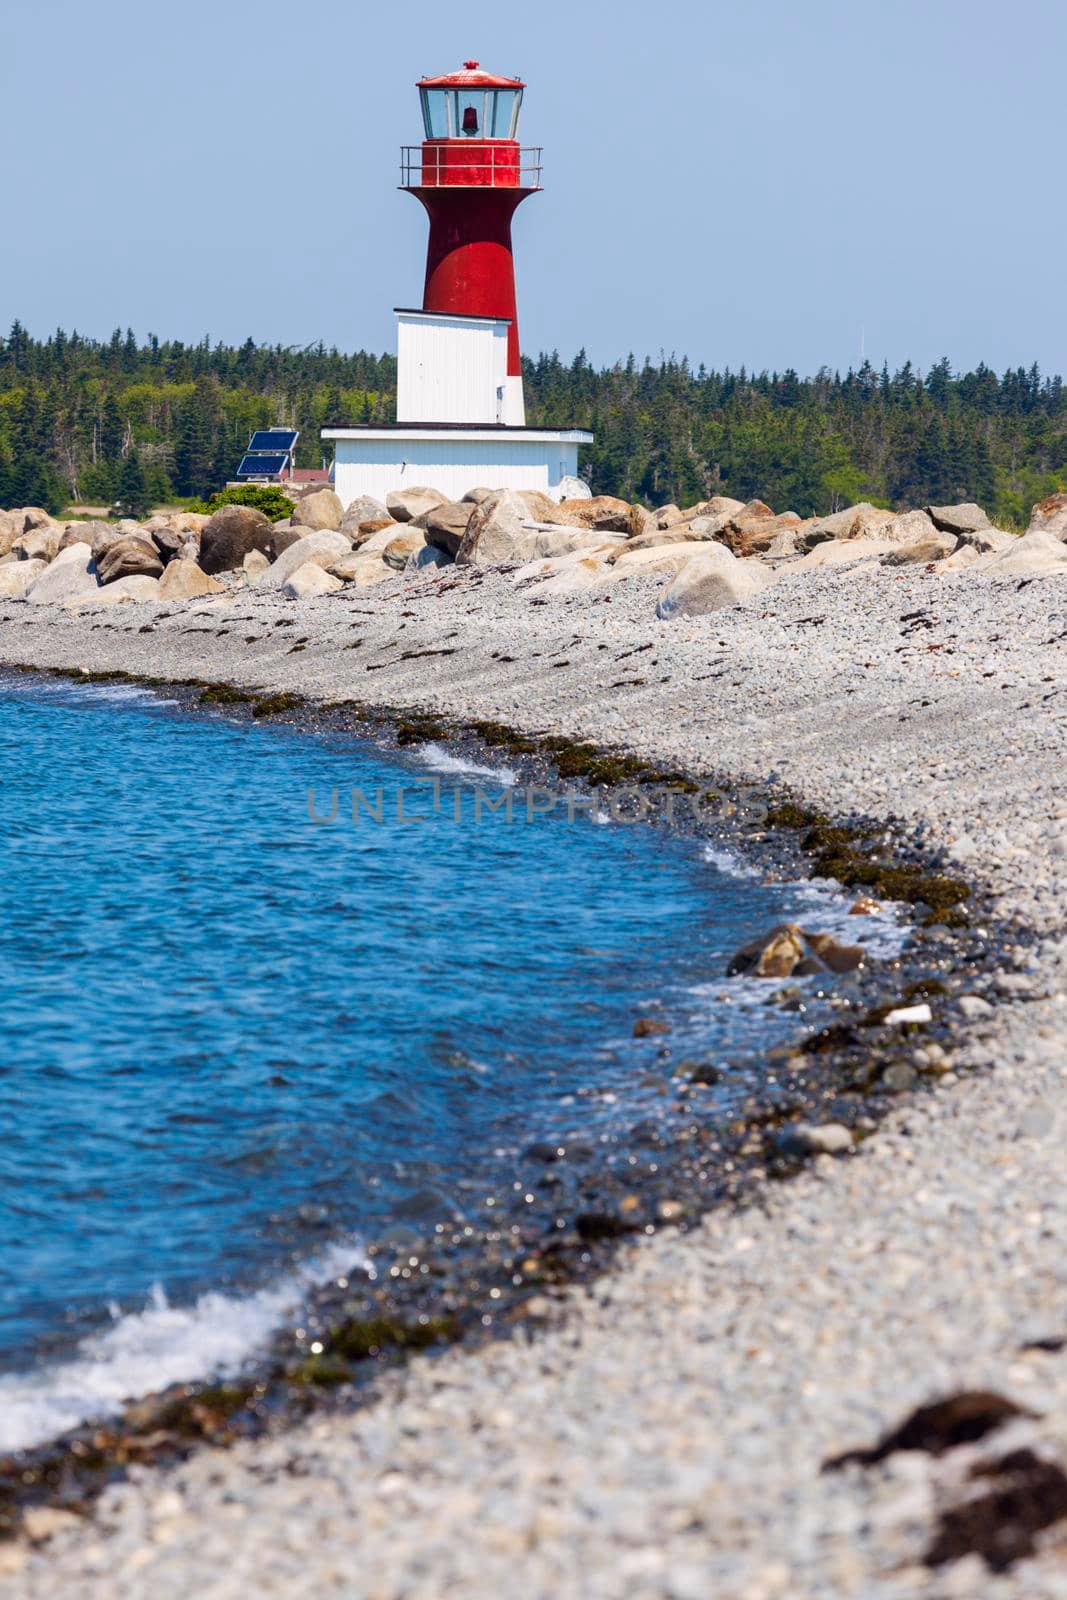 Pubnico Harbour Lighthouse in Nova Scotia. Nova Scotia, Canada.